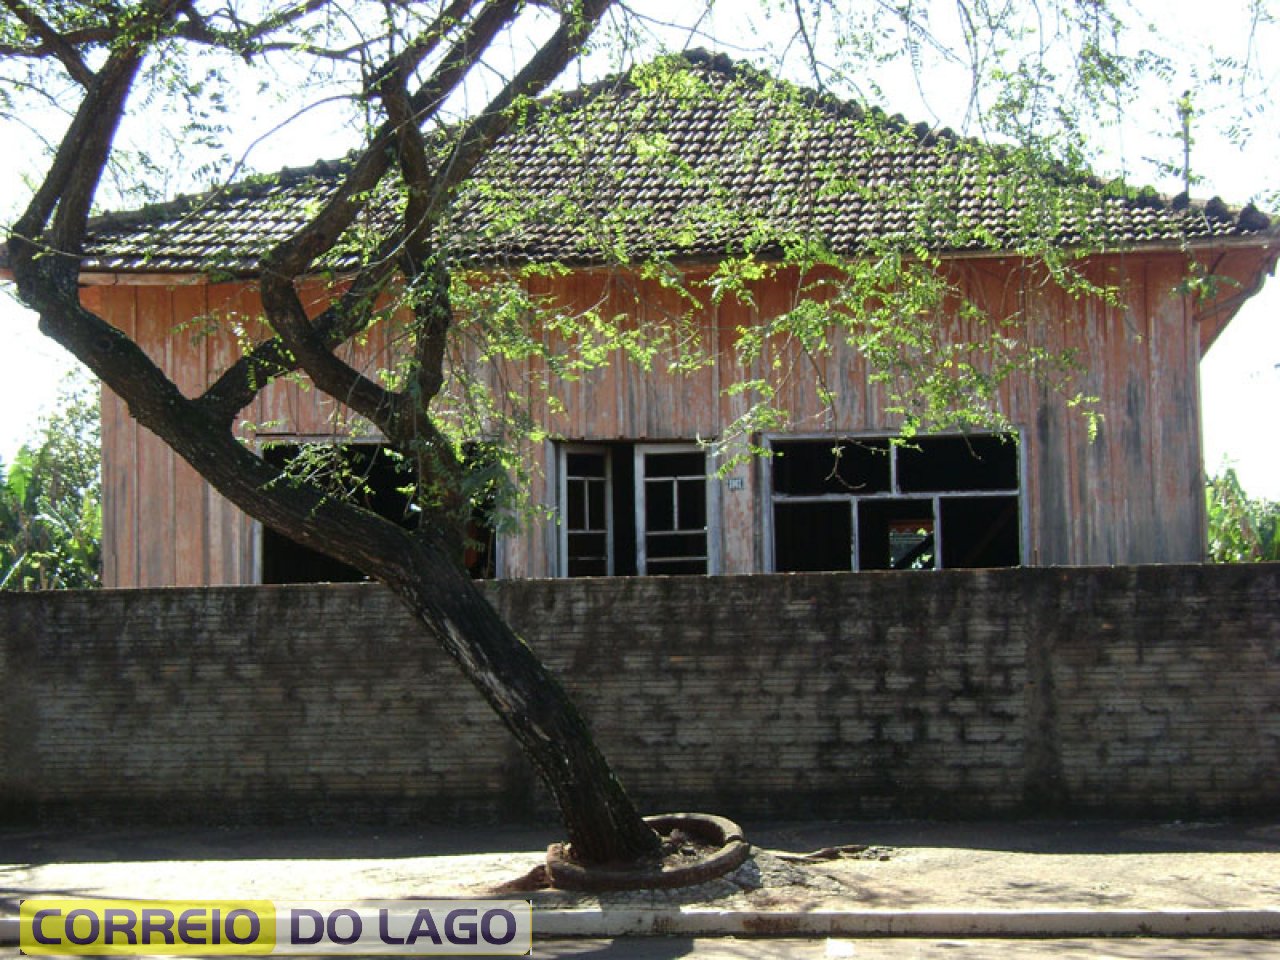 Primeira Casa Comercial família Alegrete. Construída em meados da década de 1960. Continua em pé (ruínas) foto ano 2014.